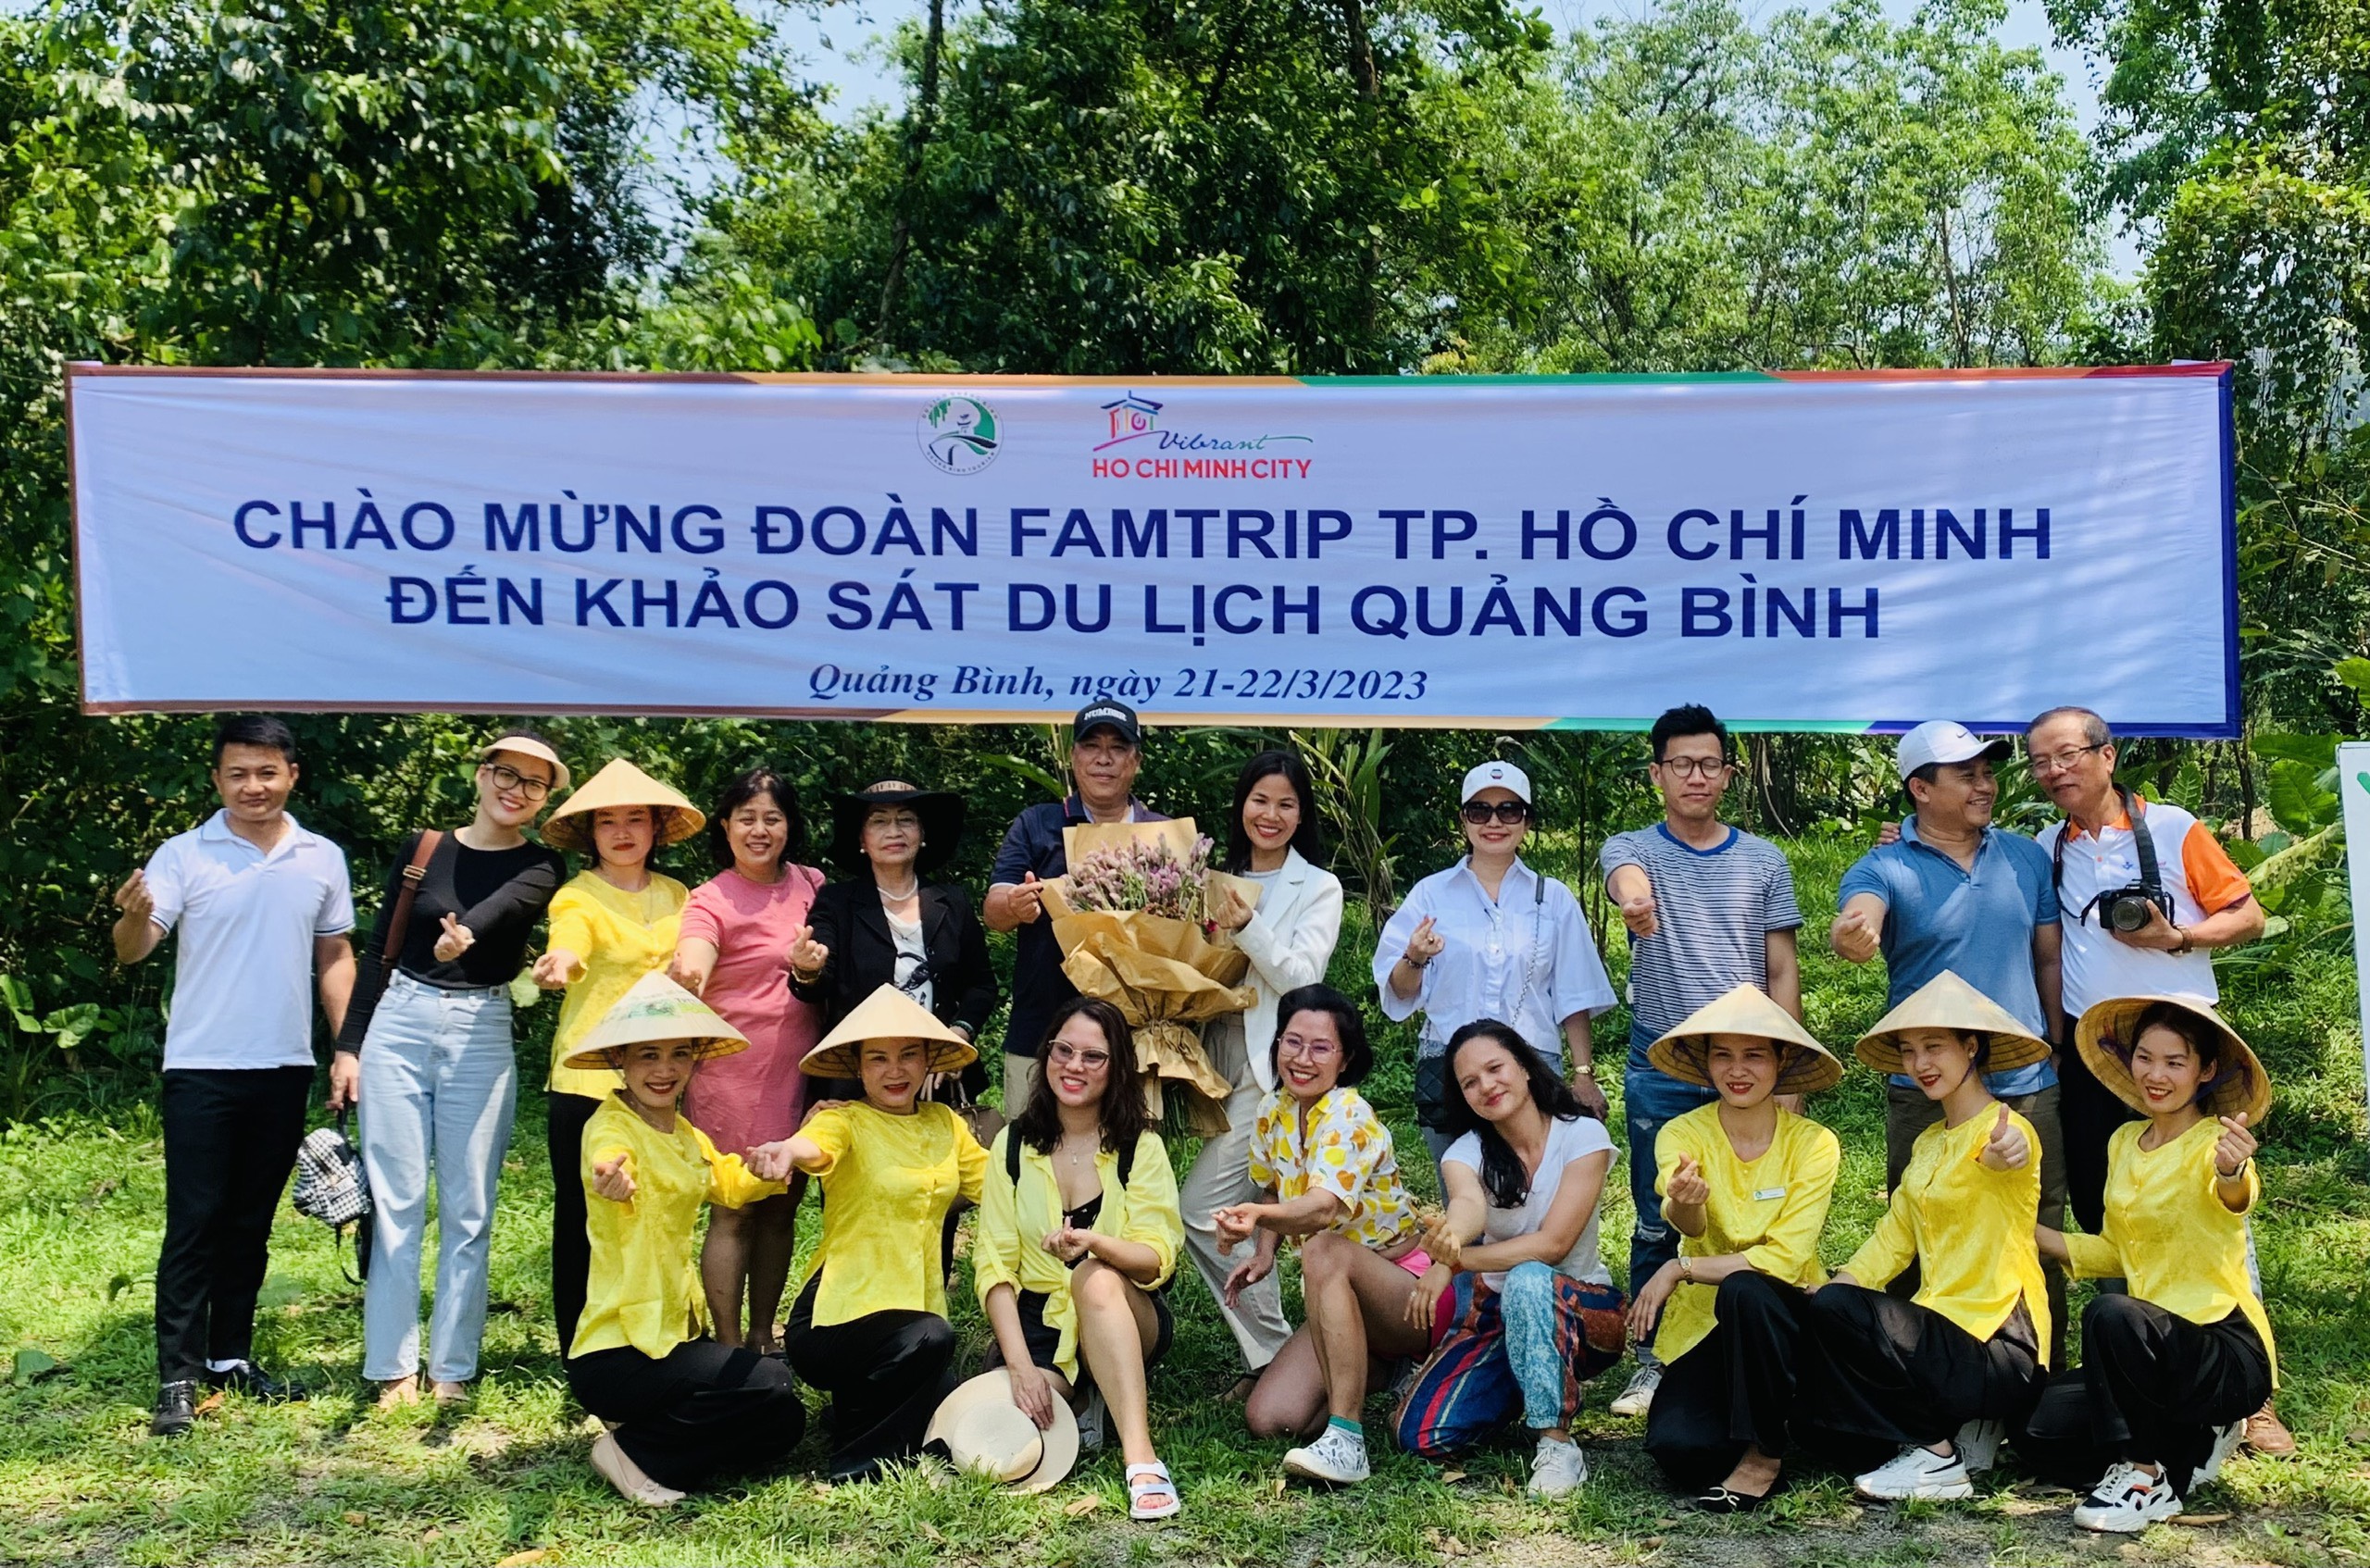 Đoàn Famtrip TP.Hồ Chí Minh khảo sát điểm đến du lịch Quảng Bình